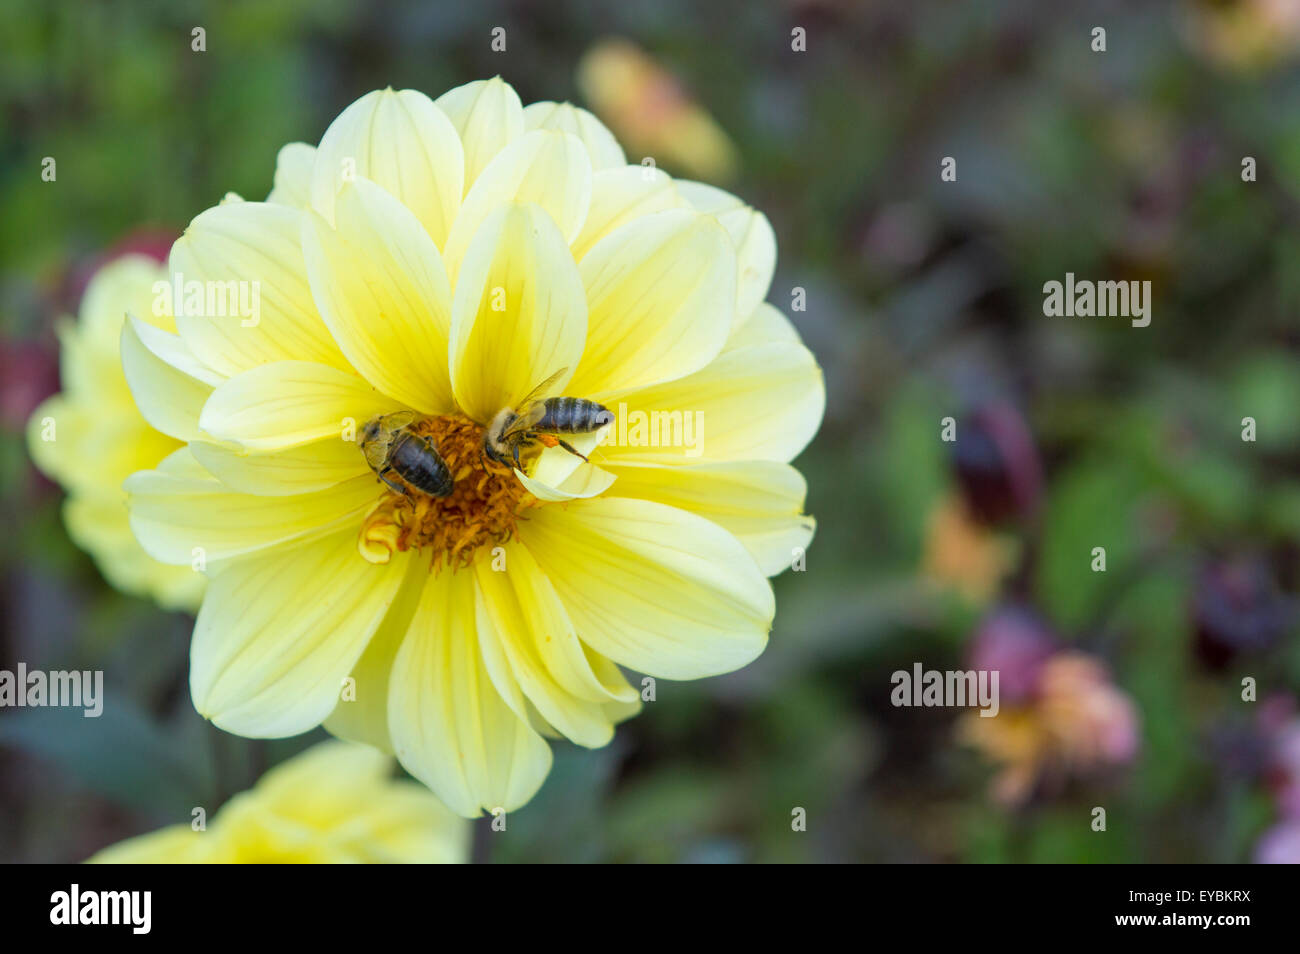 Hermosa flor amarilla con una abeja recogiendo el néctar de las flores Foto de stock